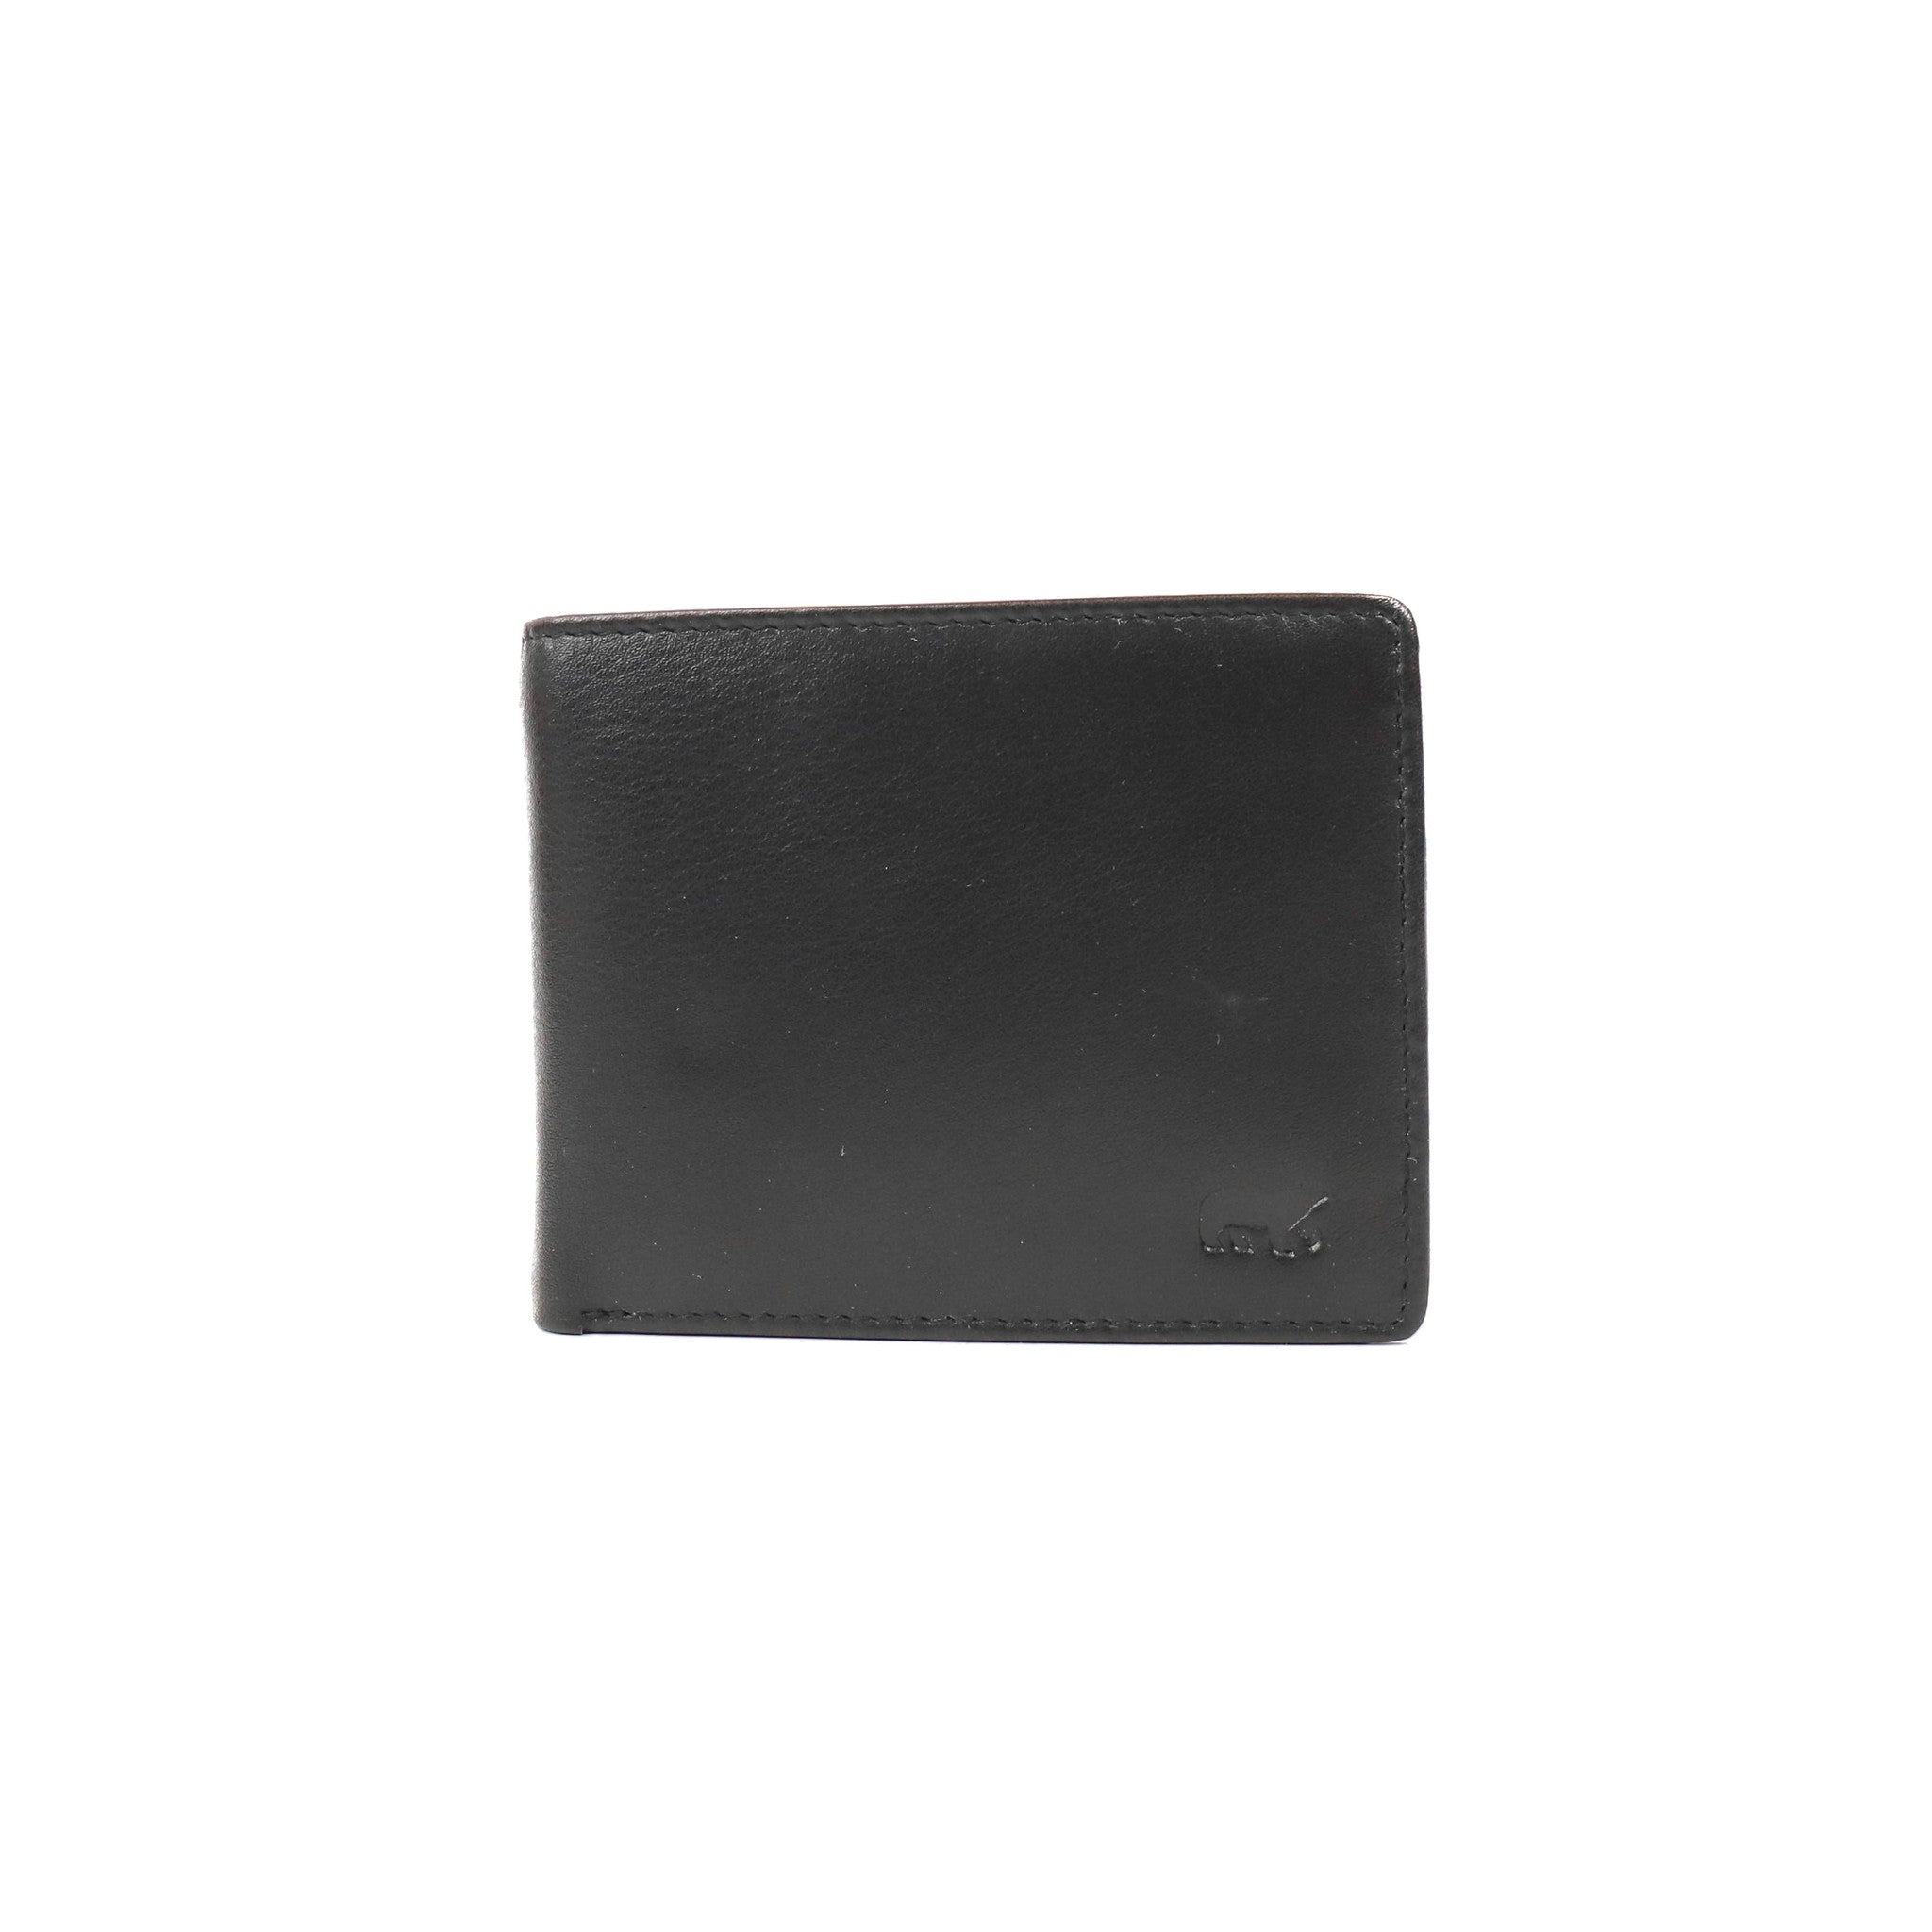 Brieftasche 'Lucas' schwarz - FR 9075